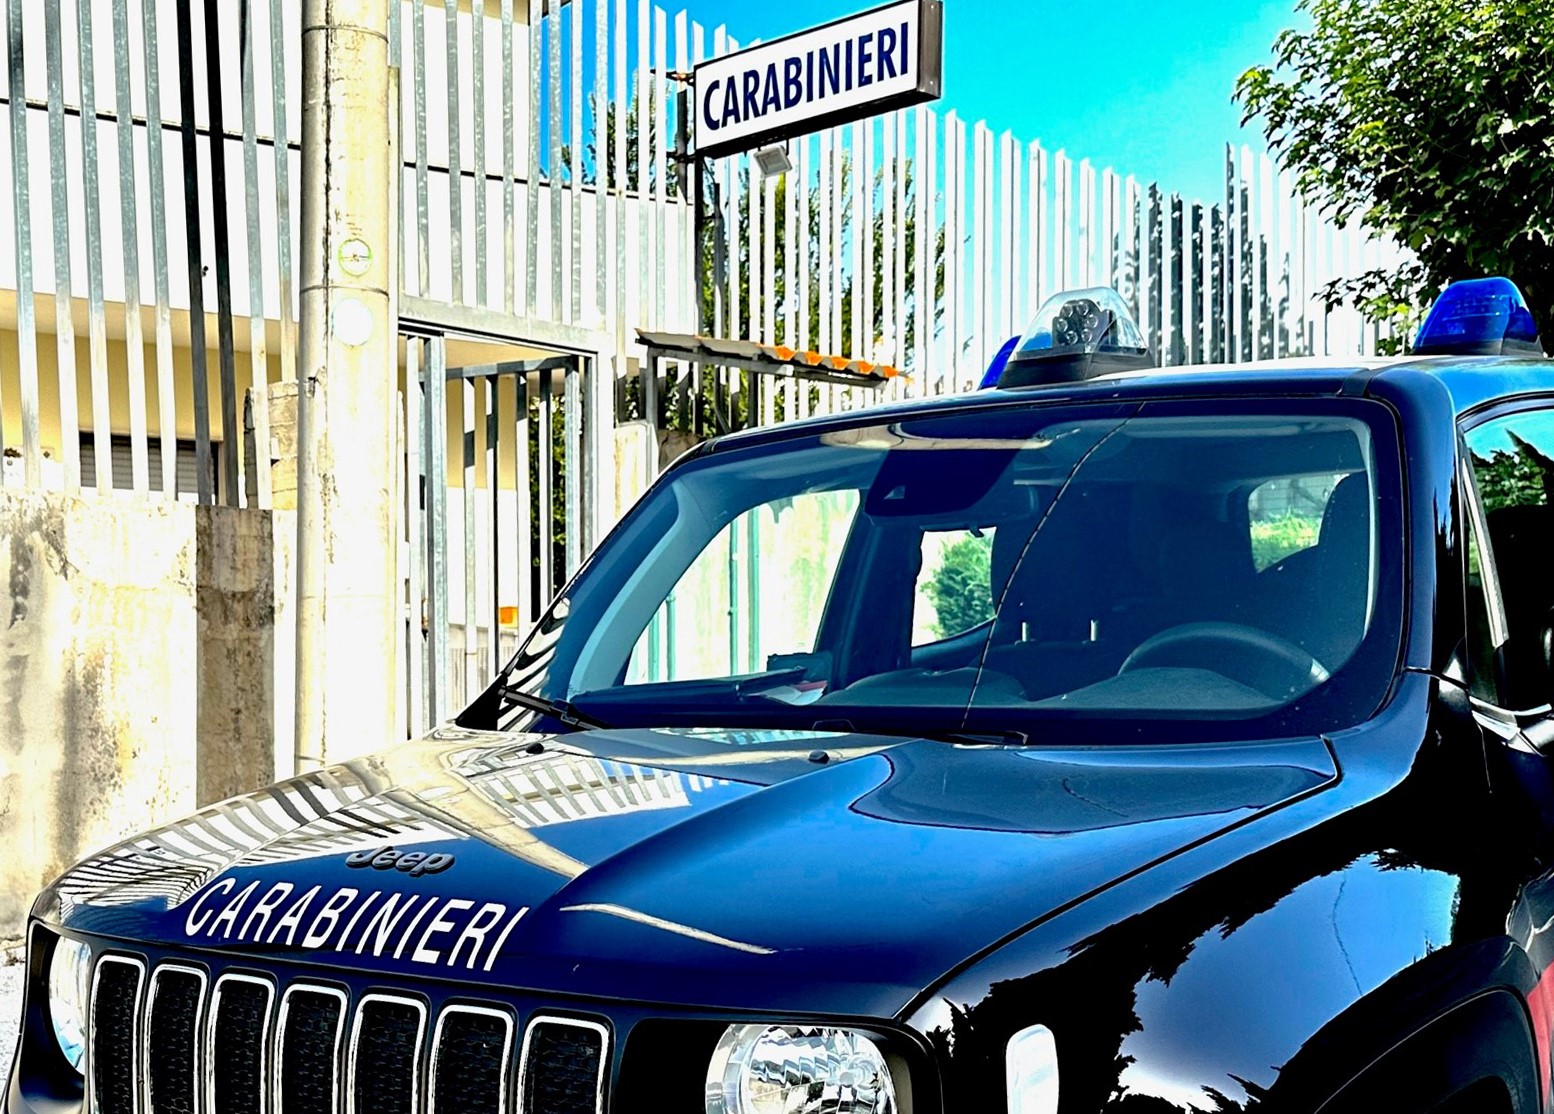 Frigento|Geolocalizza gli auricolari del suo smartphone e avvisa i Carabinieri: 28enne denunciata per ricettazione